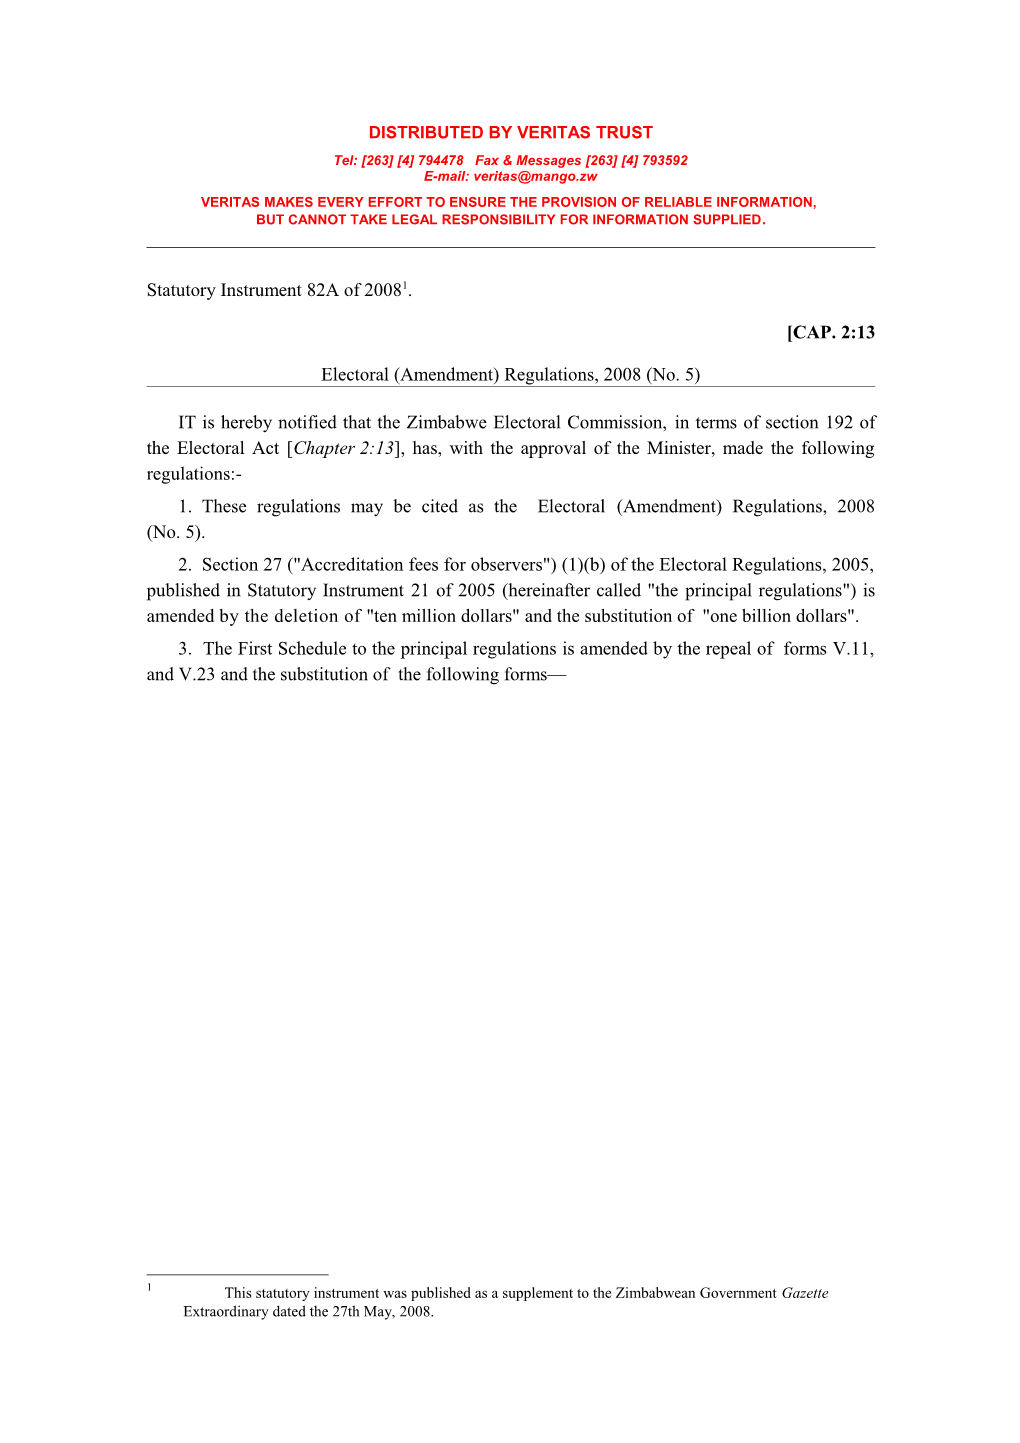 SI 2008-82A - Electoral Amendment Regs No. 5 - New Forms